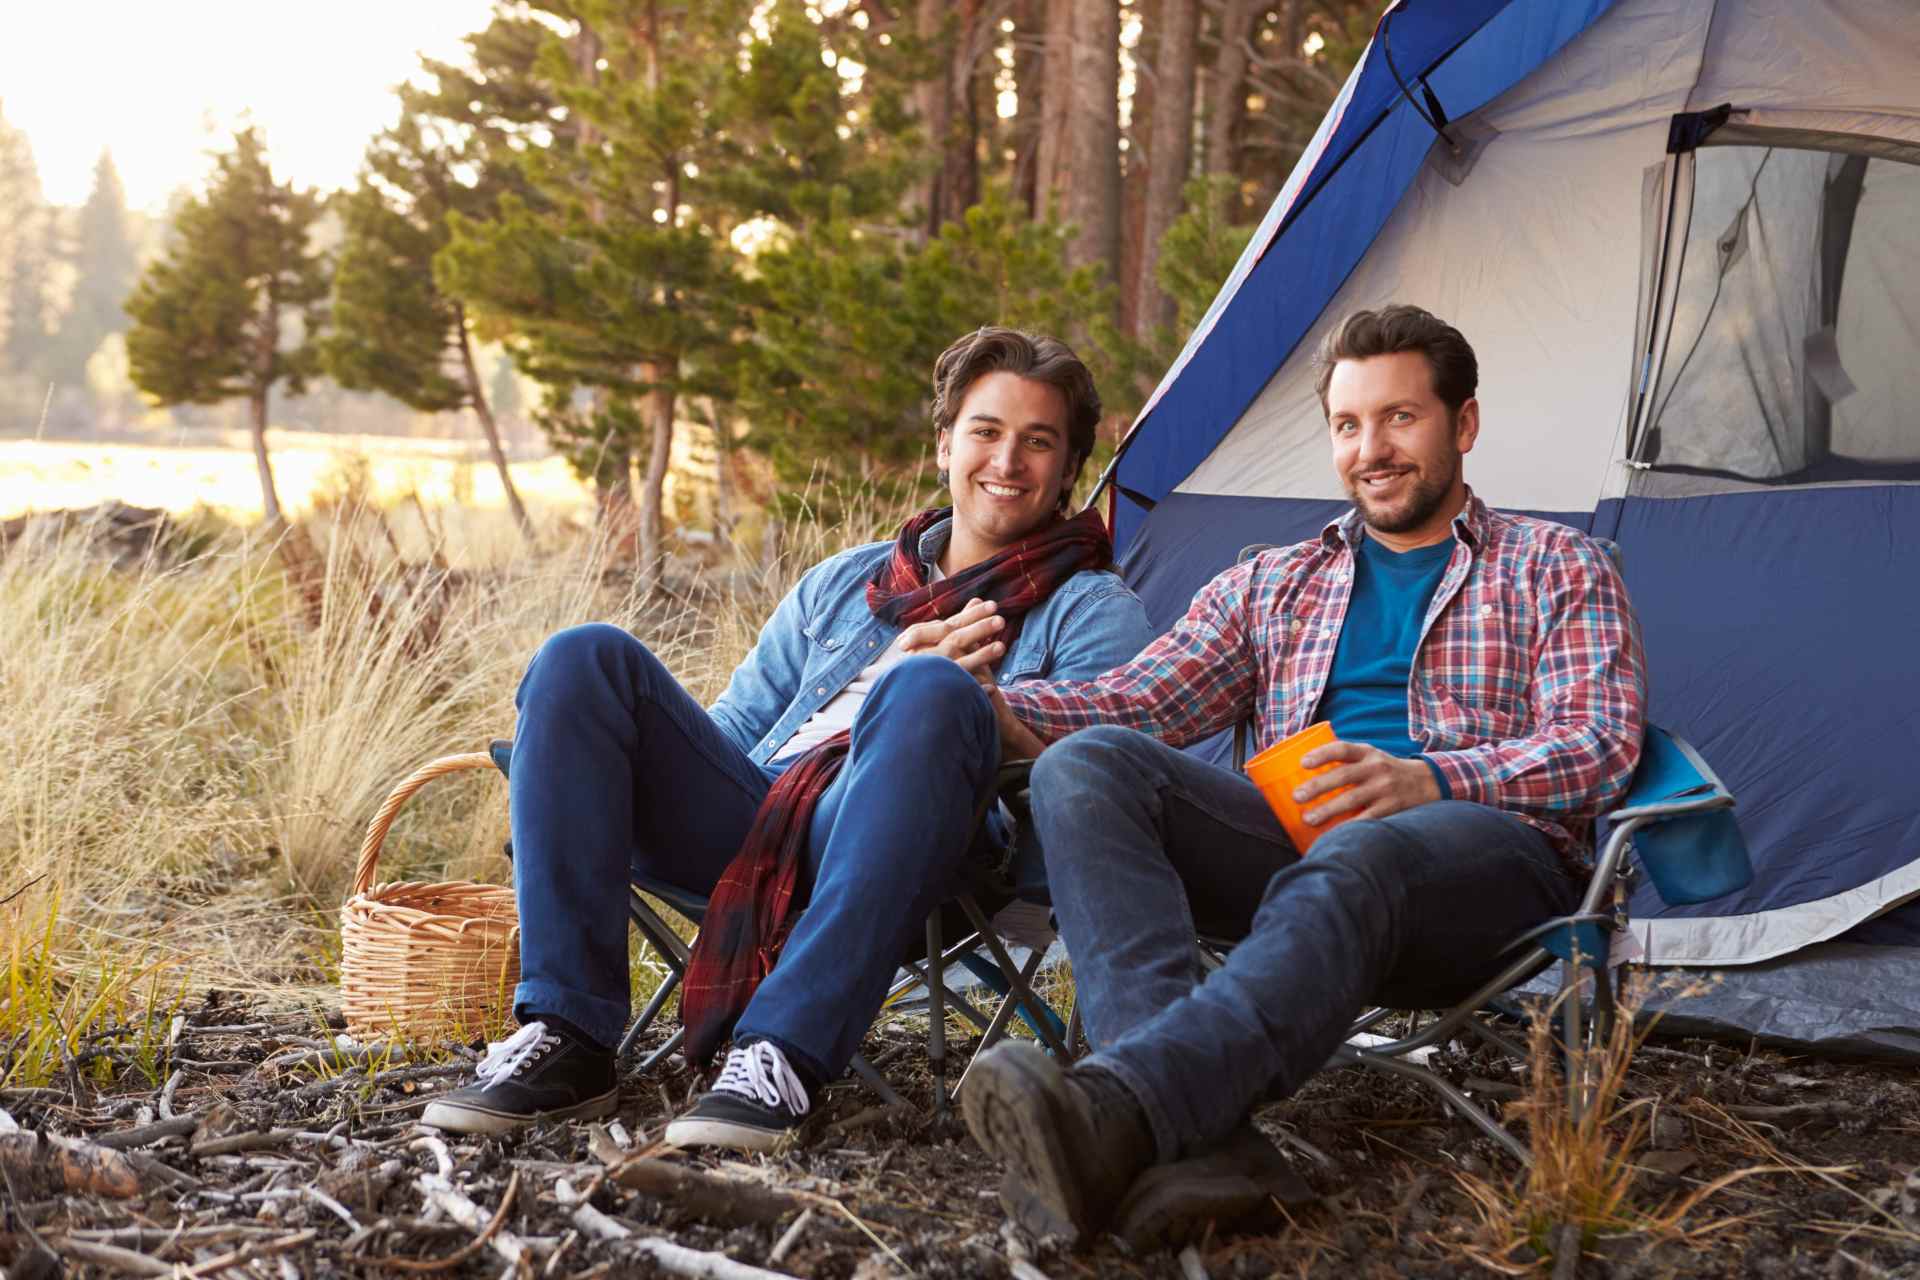 Des idées de campings gay friendly pour passer des vacances réussies en France